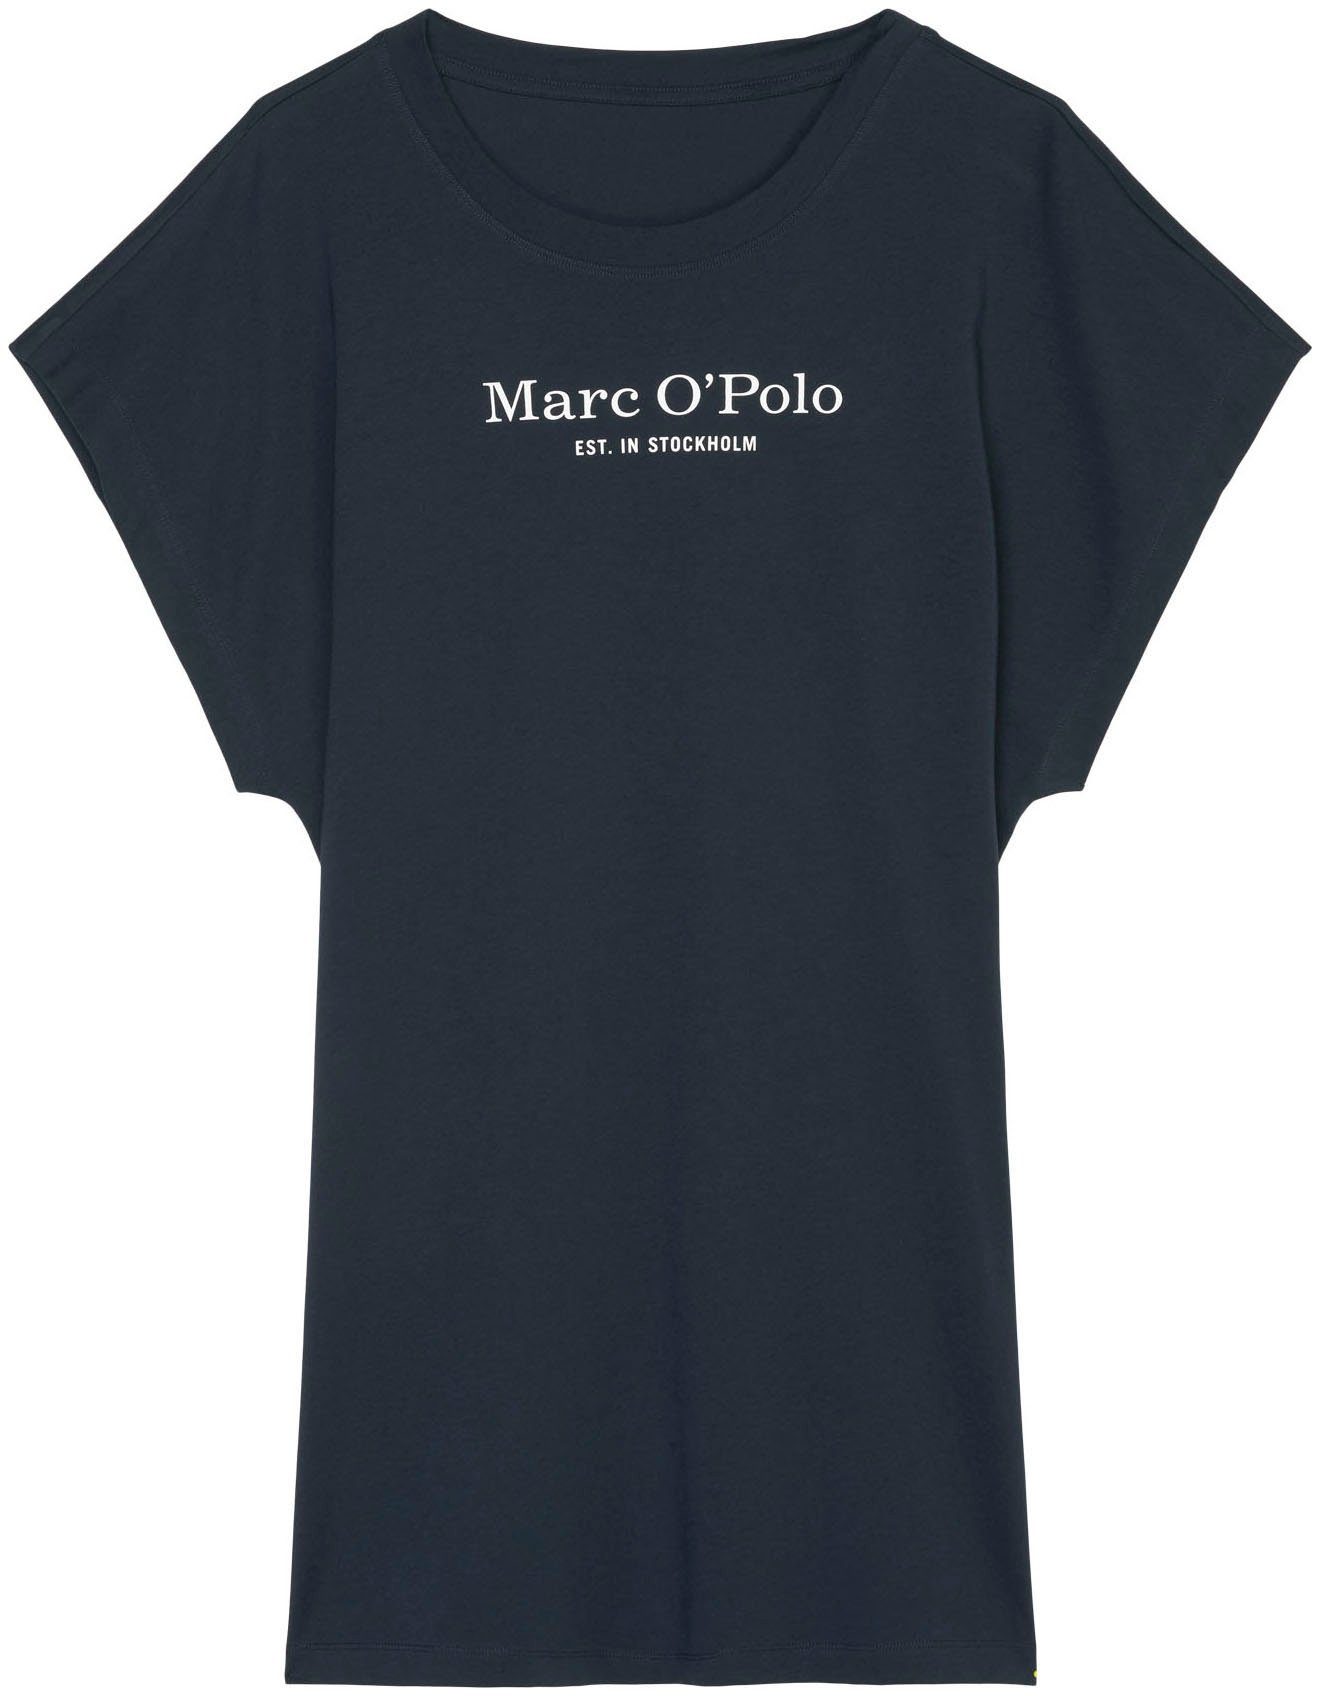 Marc O'Polo Nachthemd 898dark navy